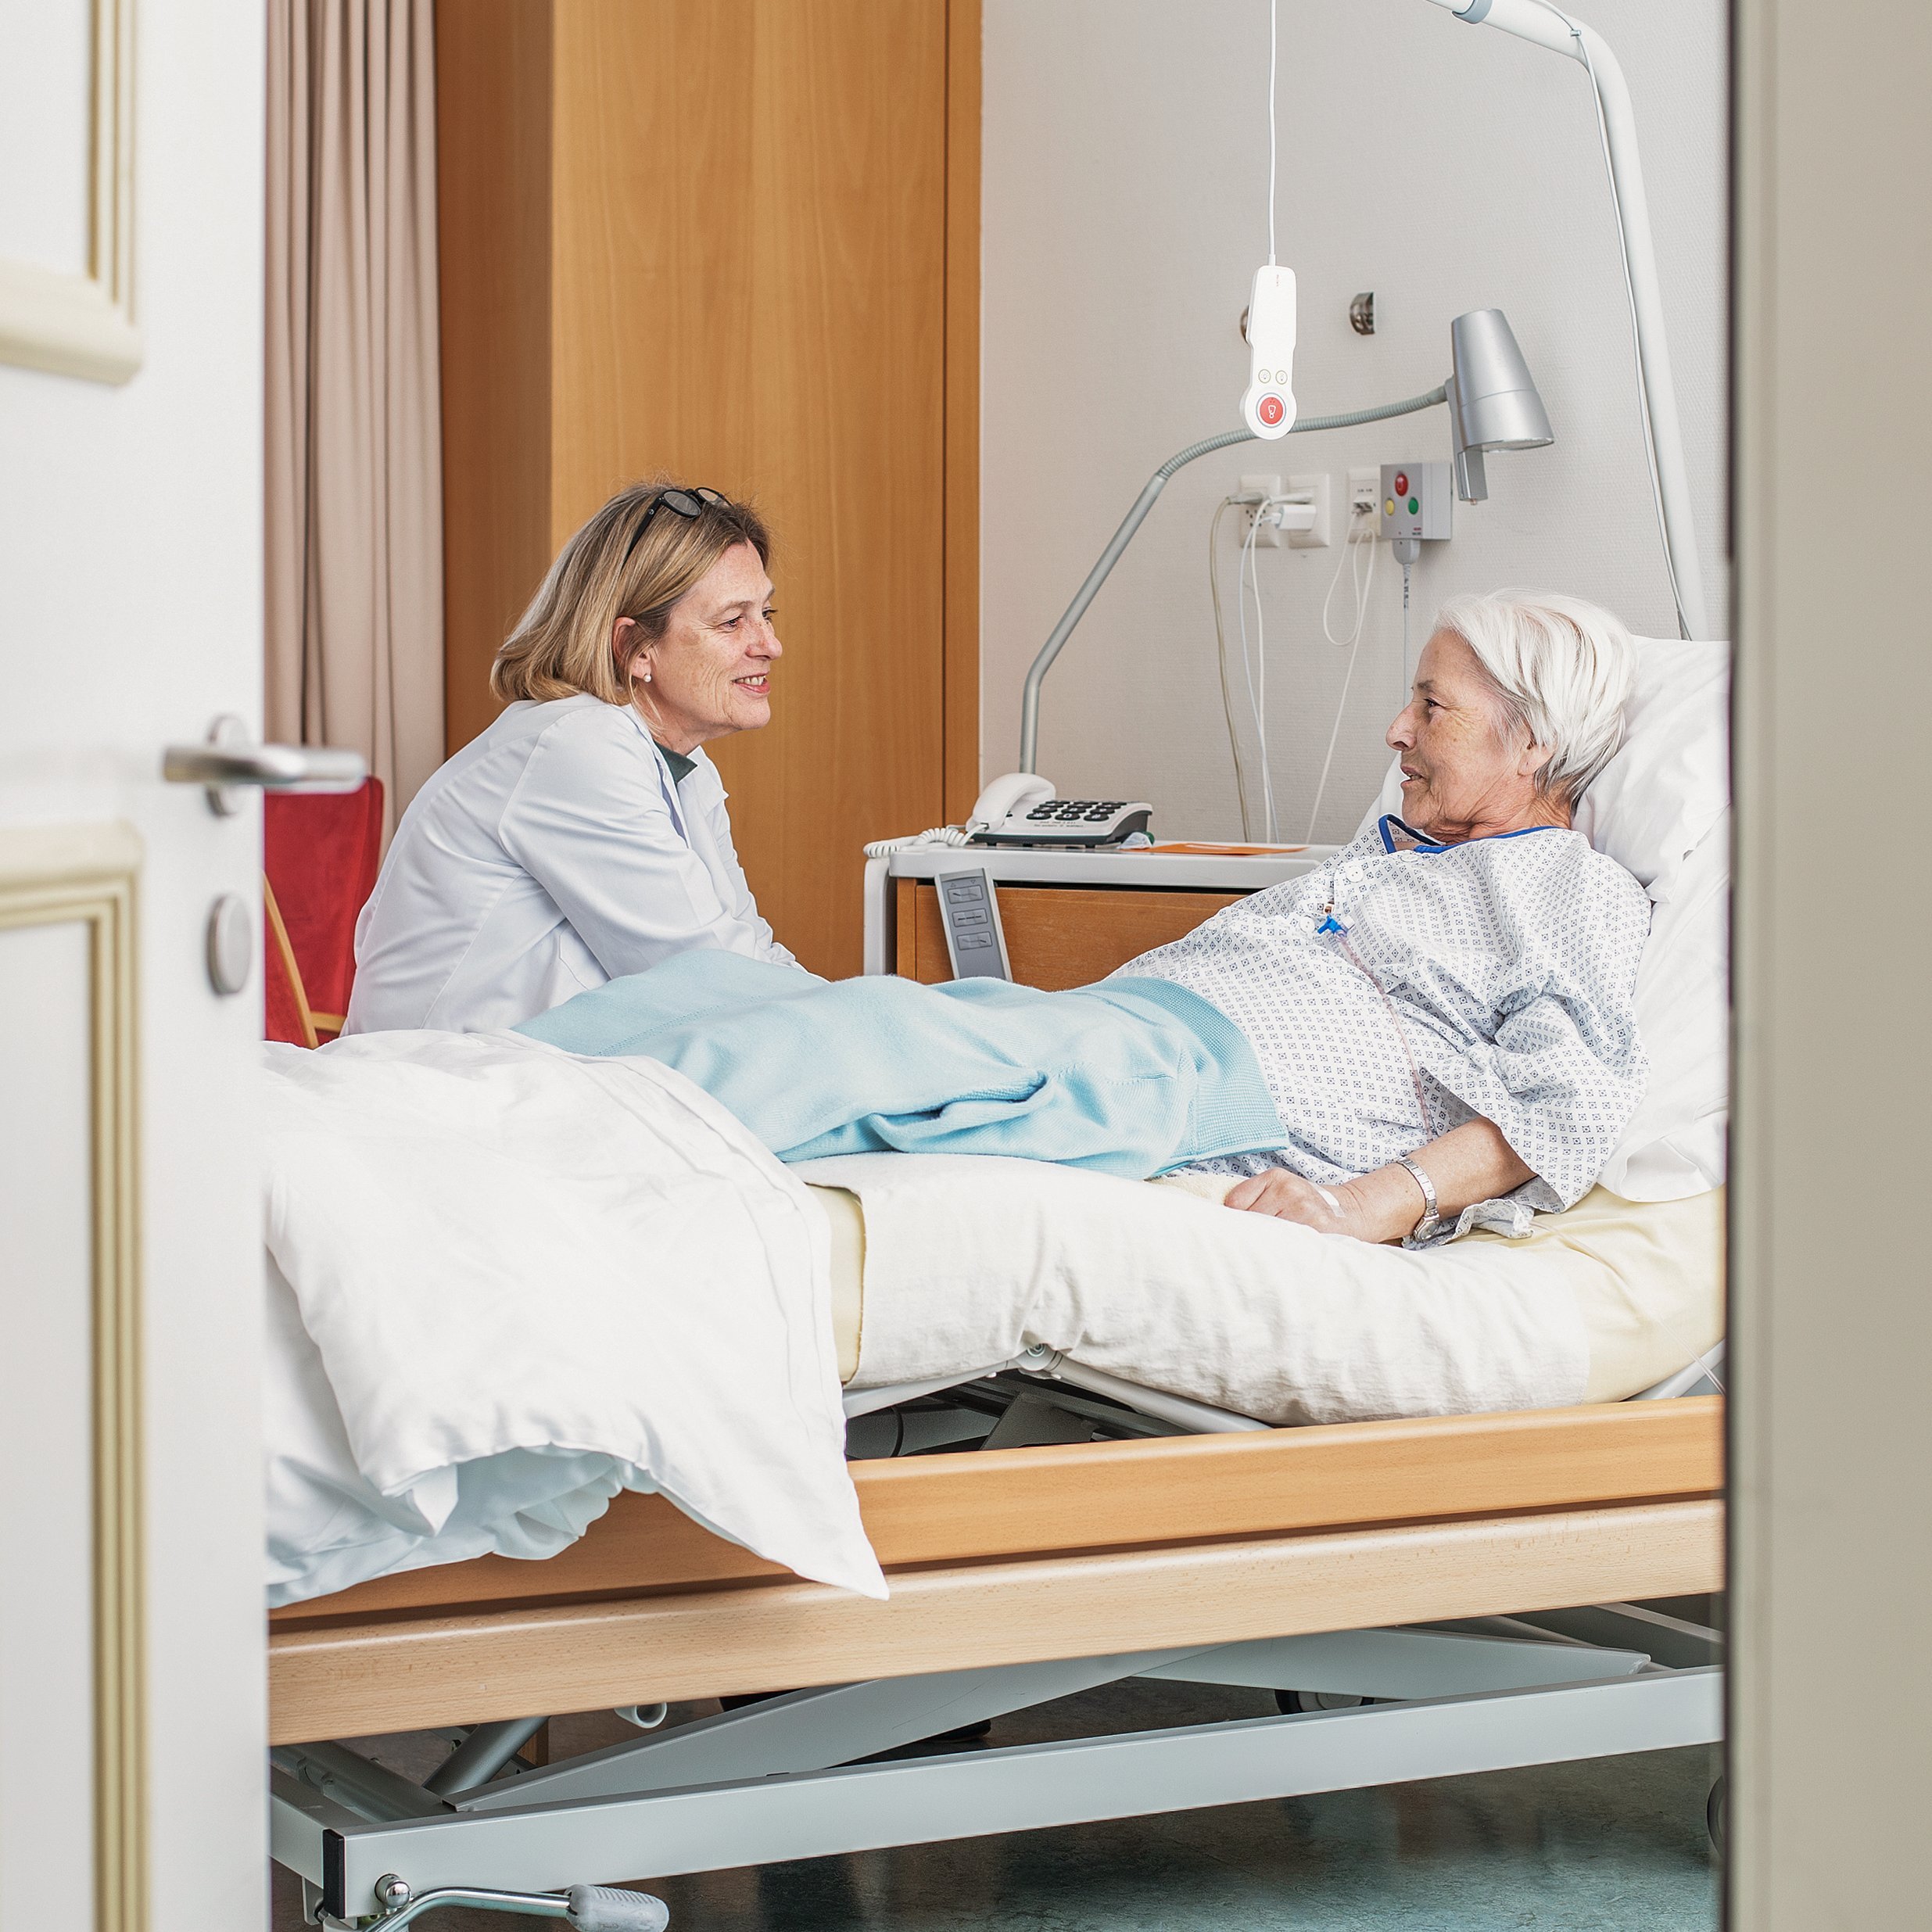 Klinik Susenberg: Gespräch mit Patientin am Krankenbett